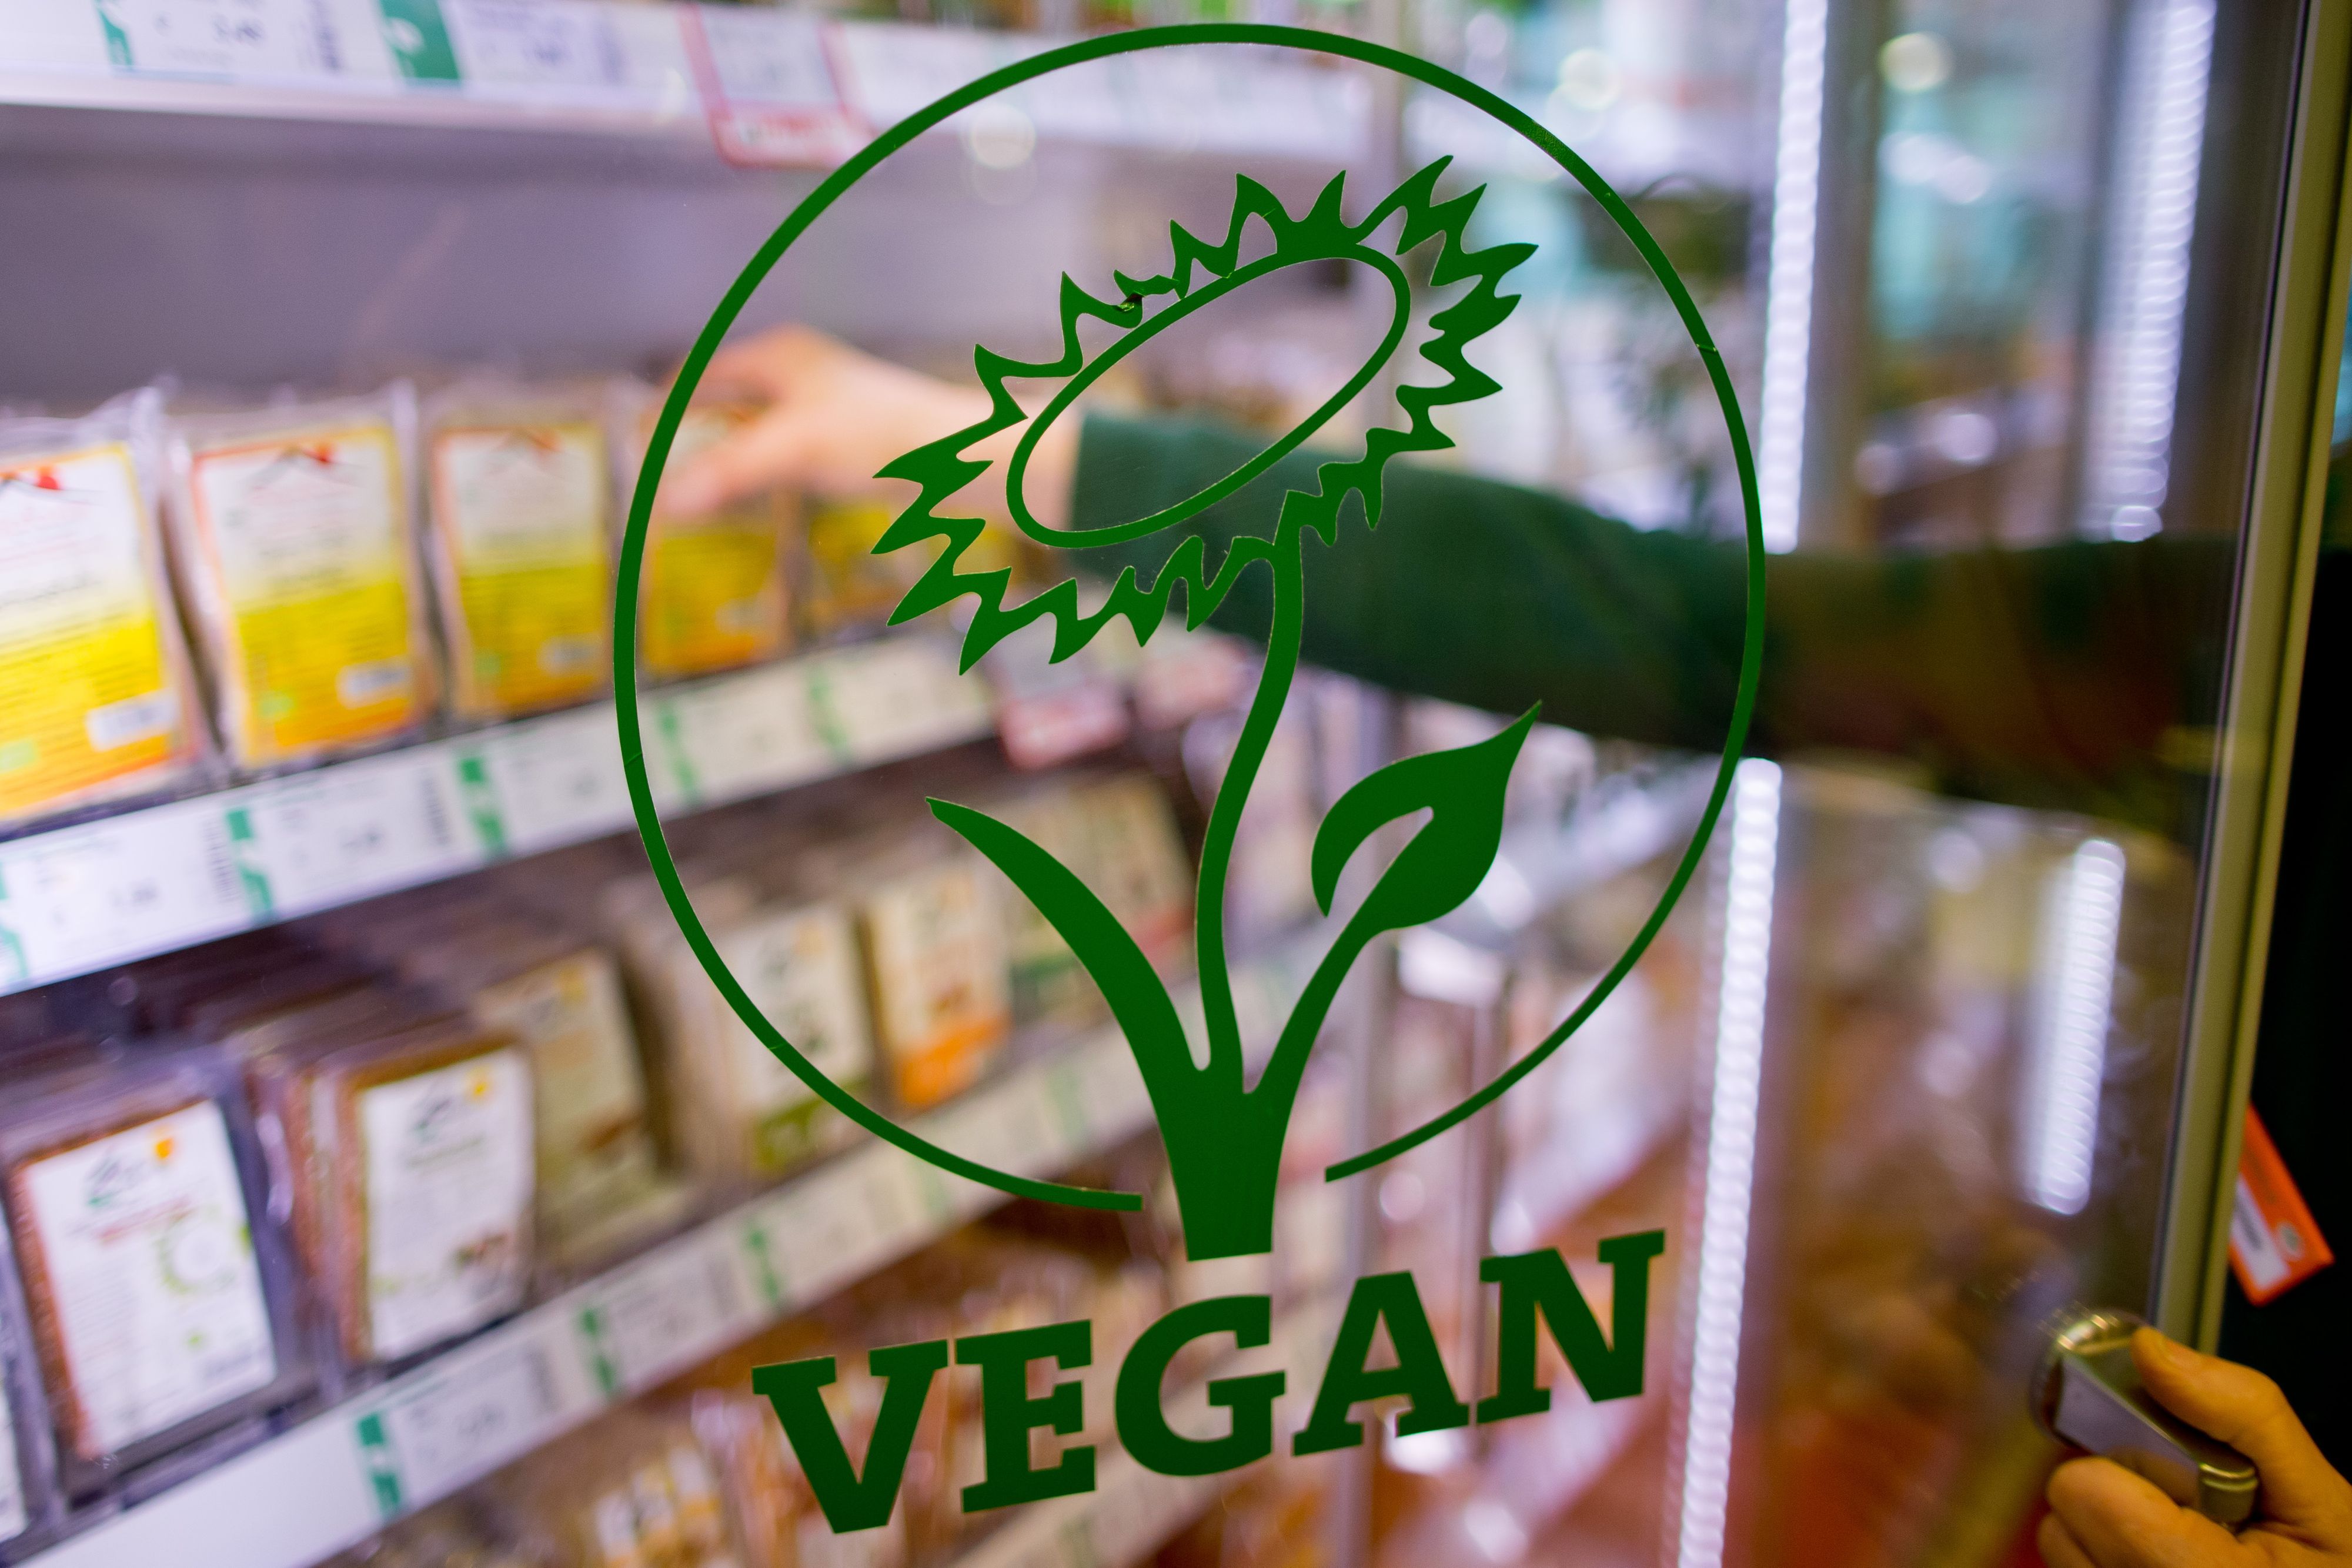 Veggie-Produkte im Supermarkt: Immer mehr Menschen langen beim fleischfreien Sortiment zu. Foto: dpa/Karmann